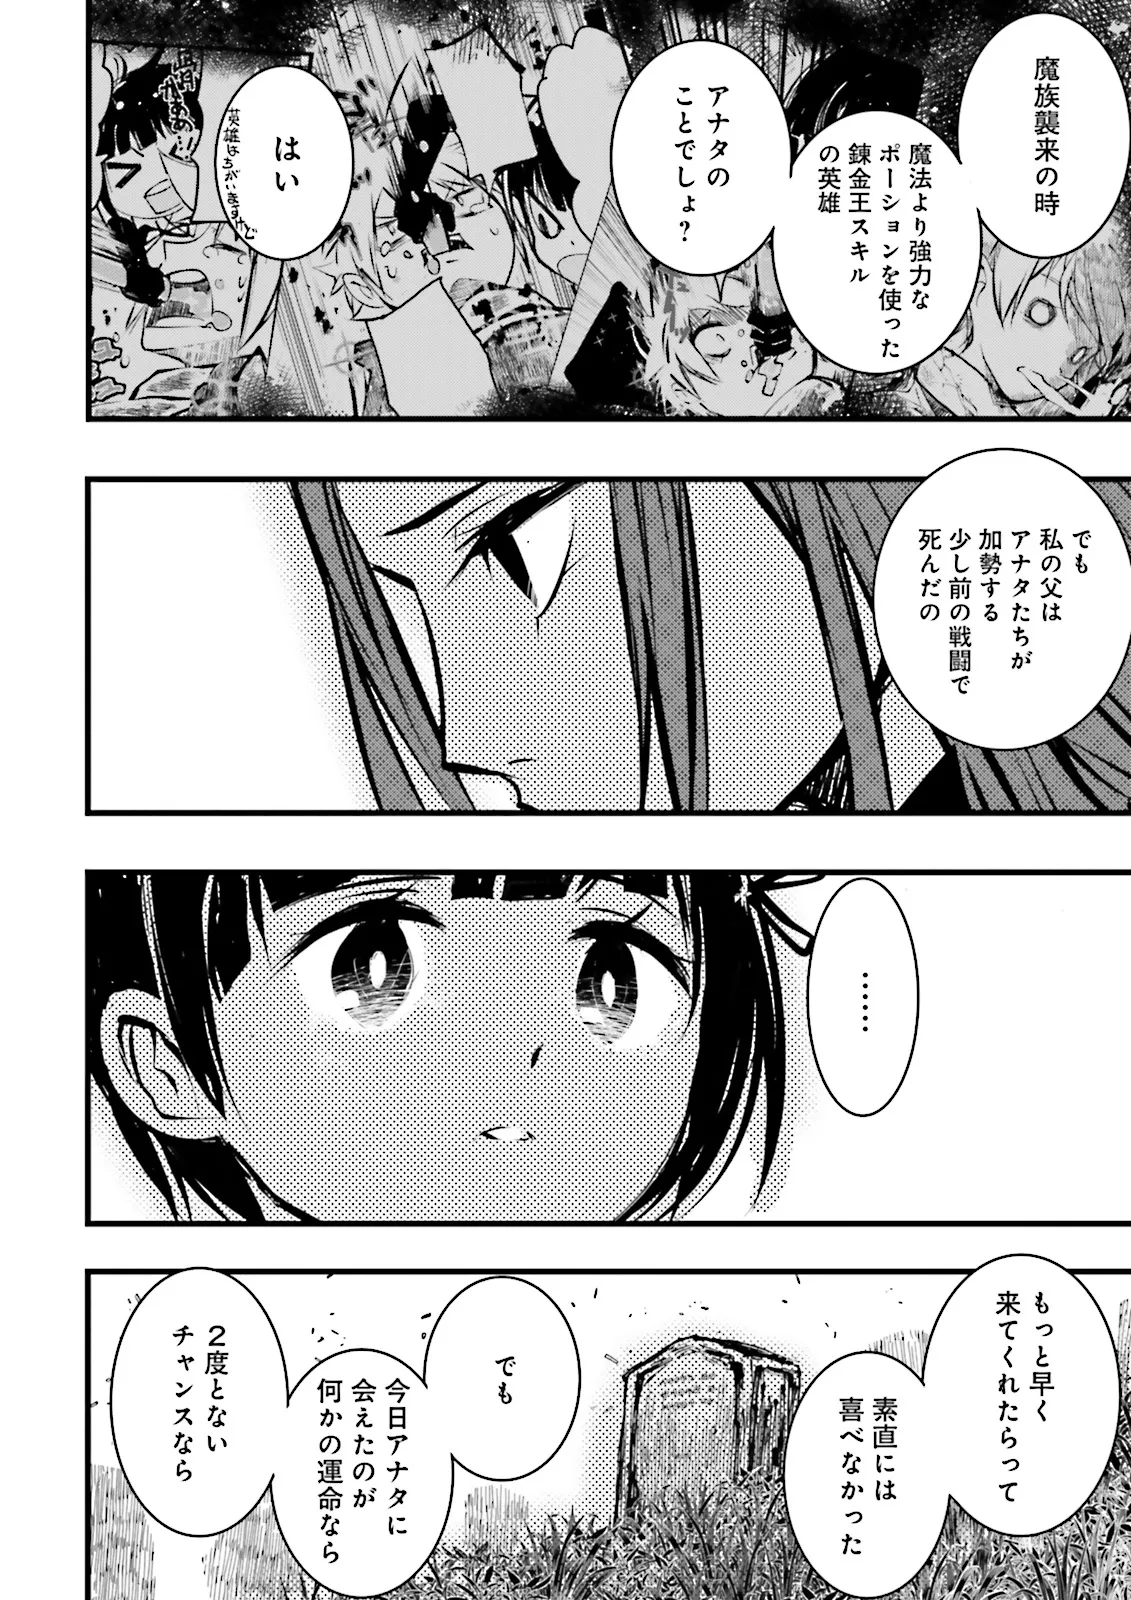 Sukiru Ga Nakereba Level wo Ageru ~ 99 Ga Kansuto No Sekai De Reberu 800 Man Kara Sutato ~ - Chapter 38.4 - Page 2